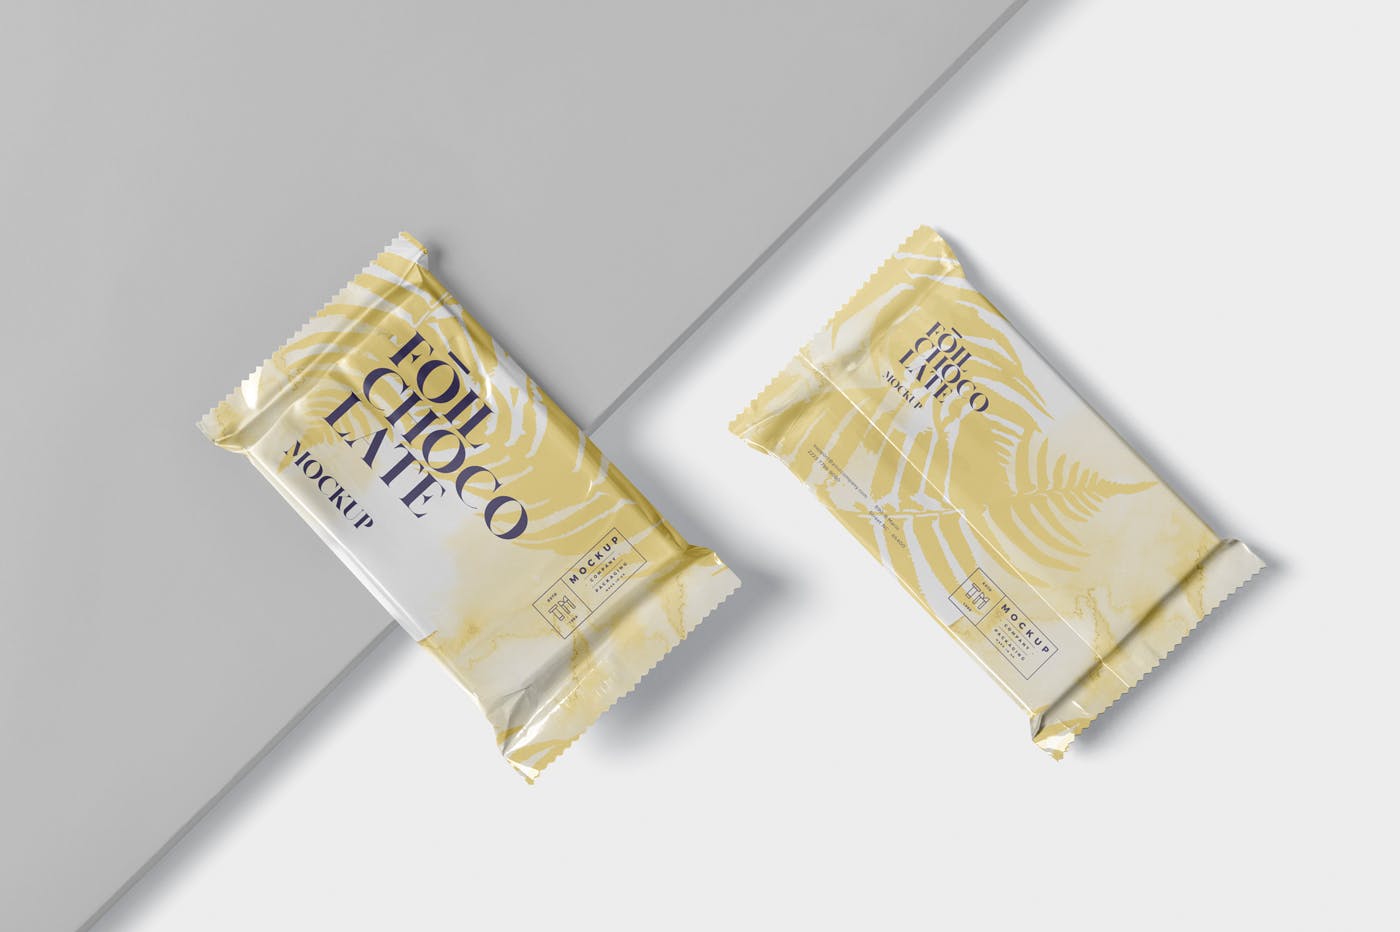 巧克力超薄铝箔纸包装设计效果图第一素材精选 Foil Chocolate Packaging Mockup – Slim Size插图(2)